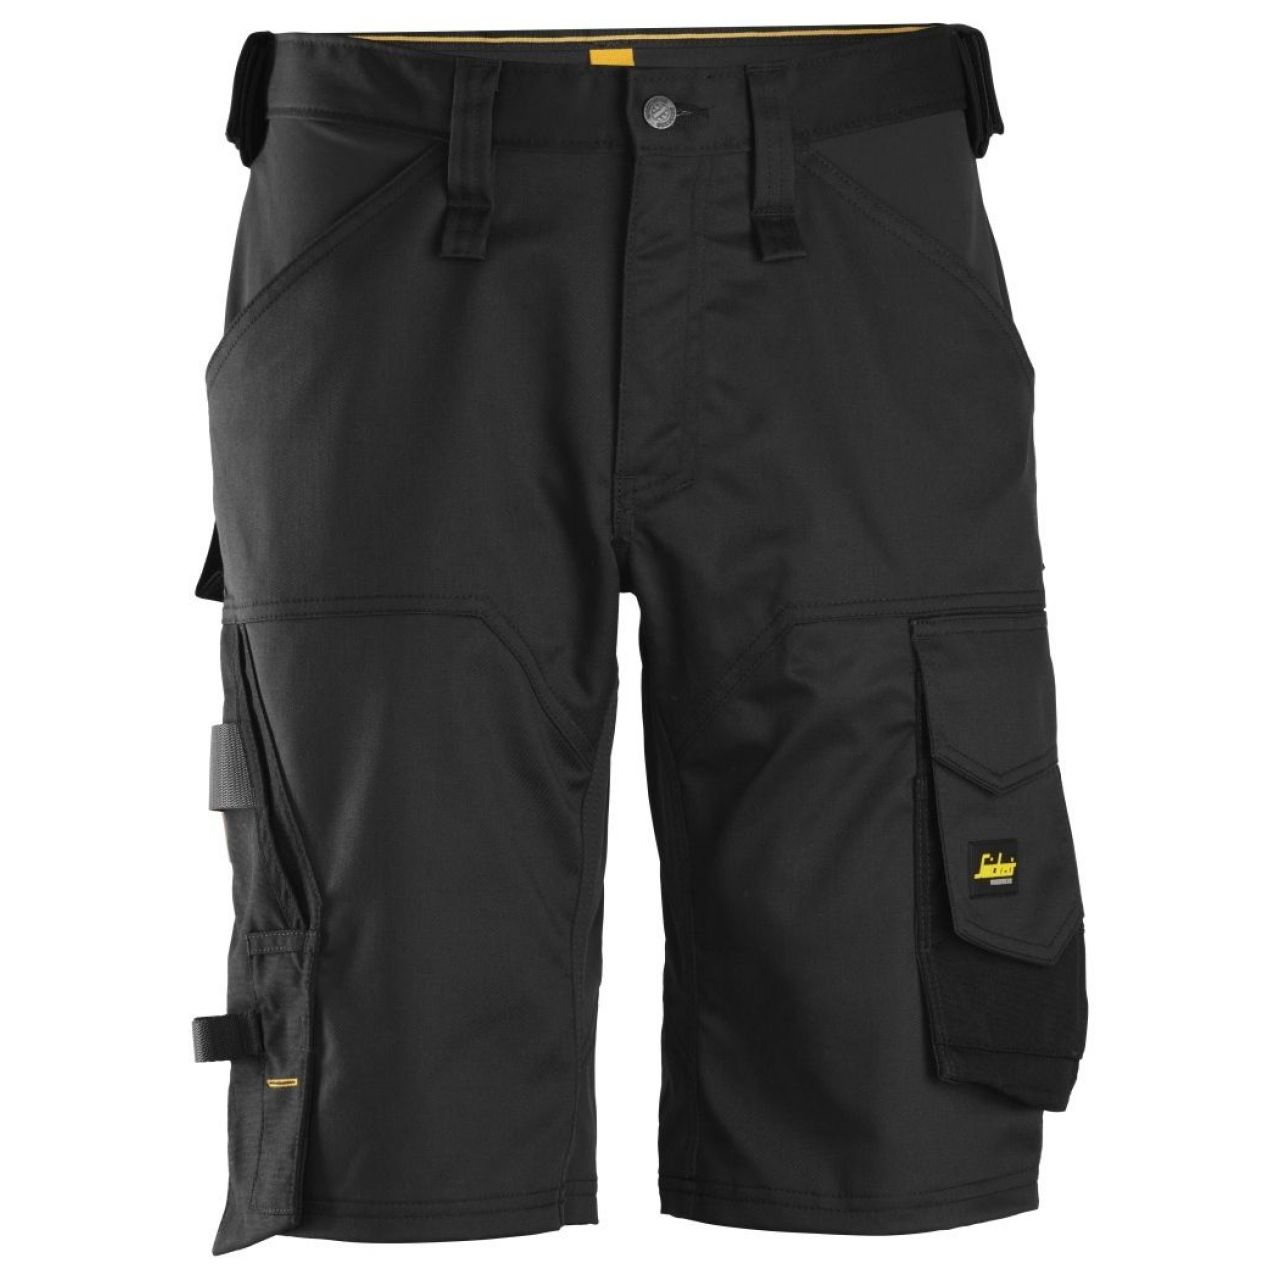 Pantalon corto elastico holgado AllroundWork negro talla 054